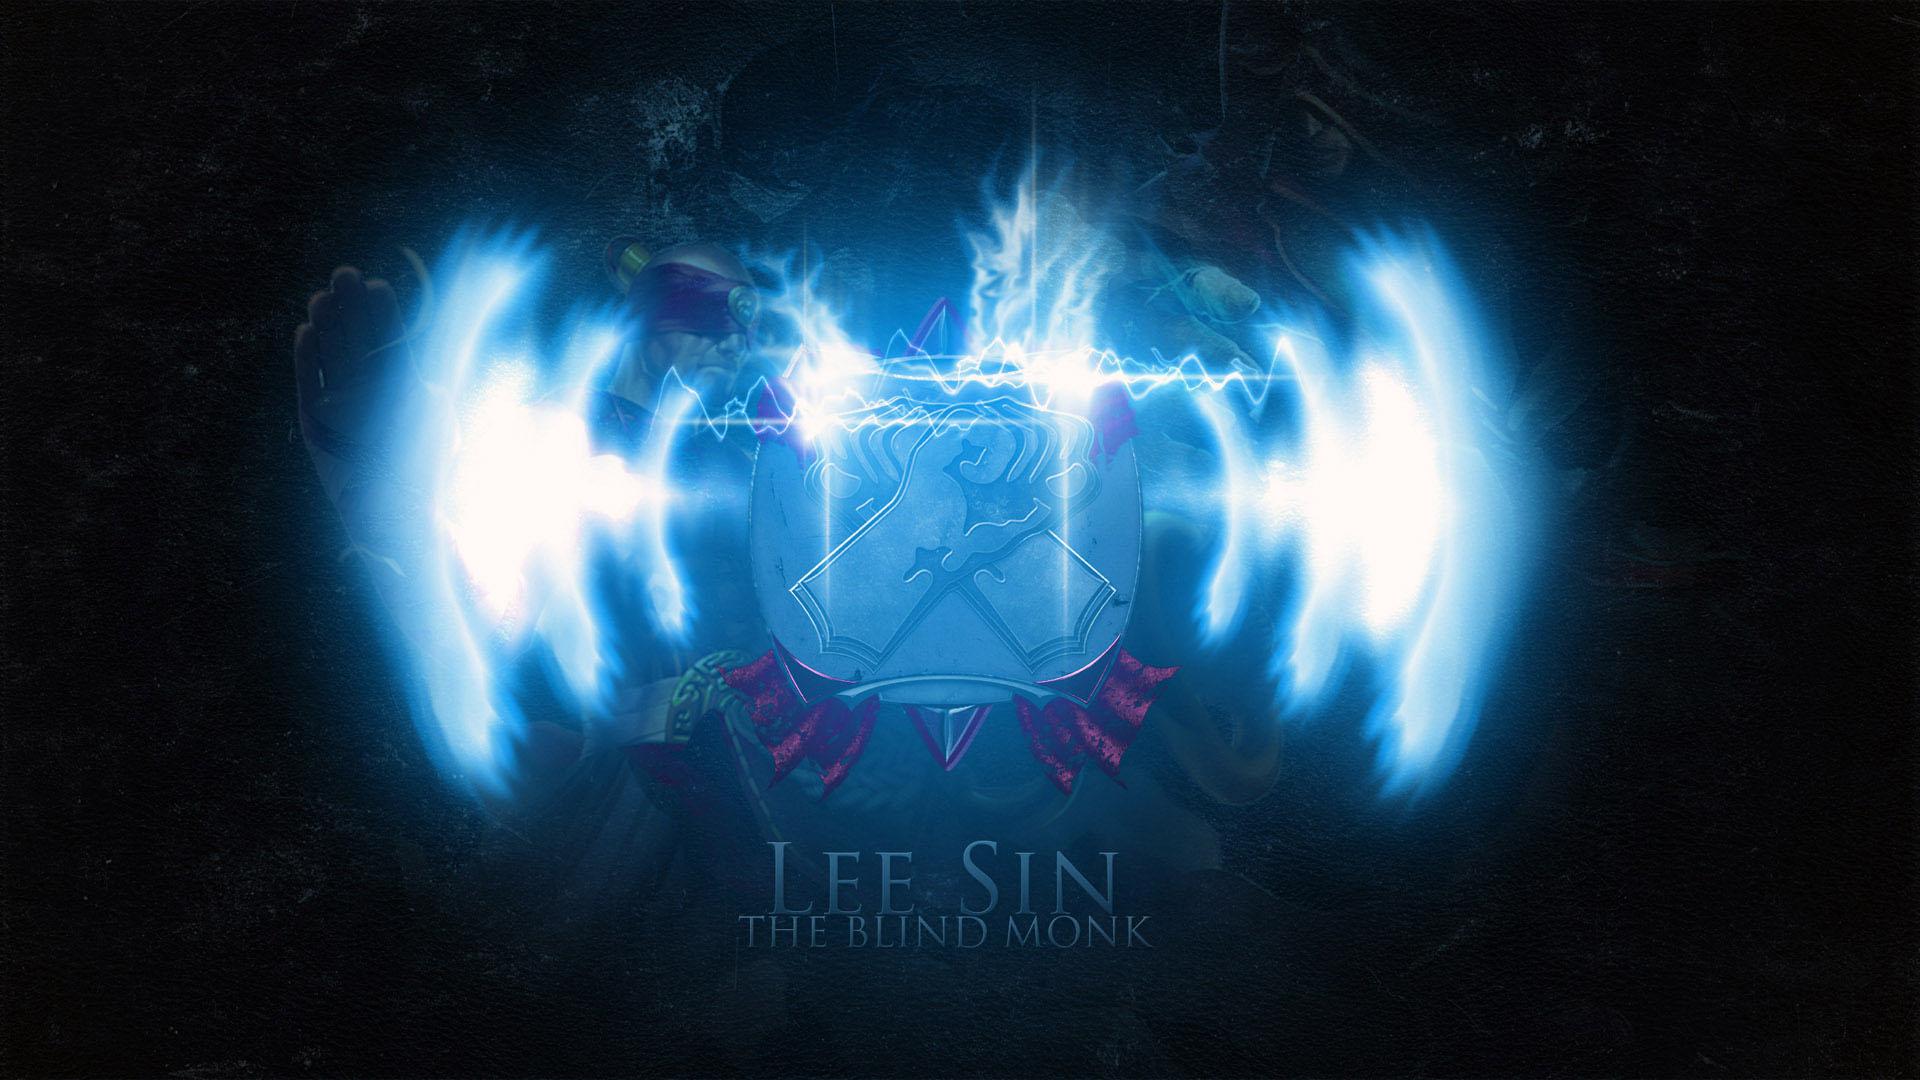 Lee Sin League of Legends wallpaper HD free Download